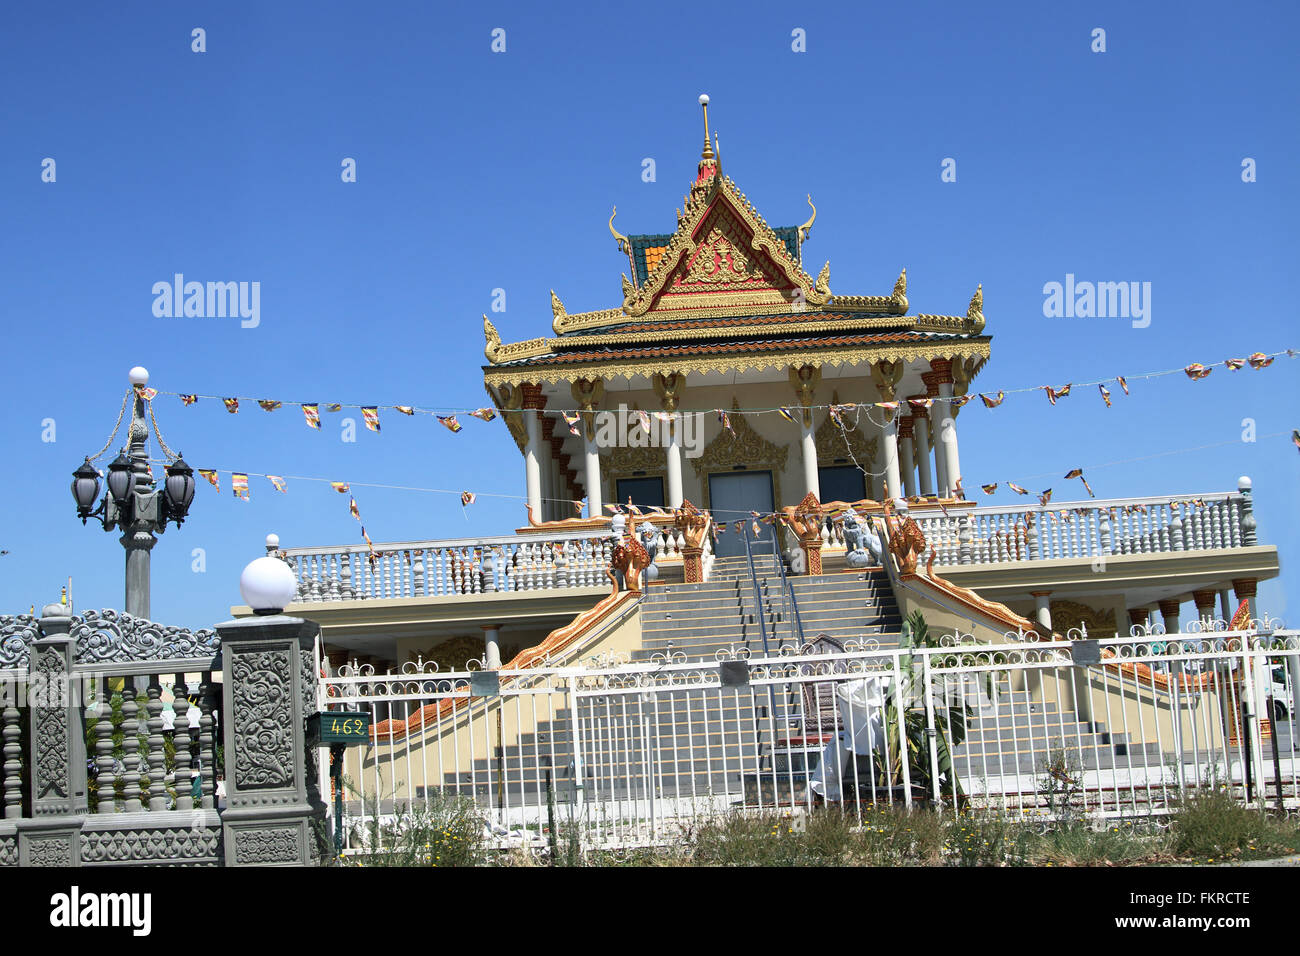 Buddhistischer Tempel in Springvale Süd Victoria Australien Stockfoto